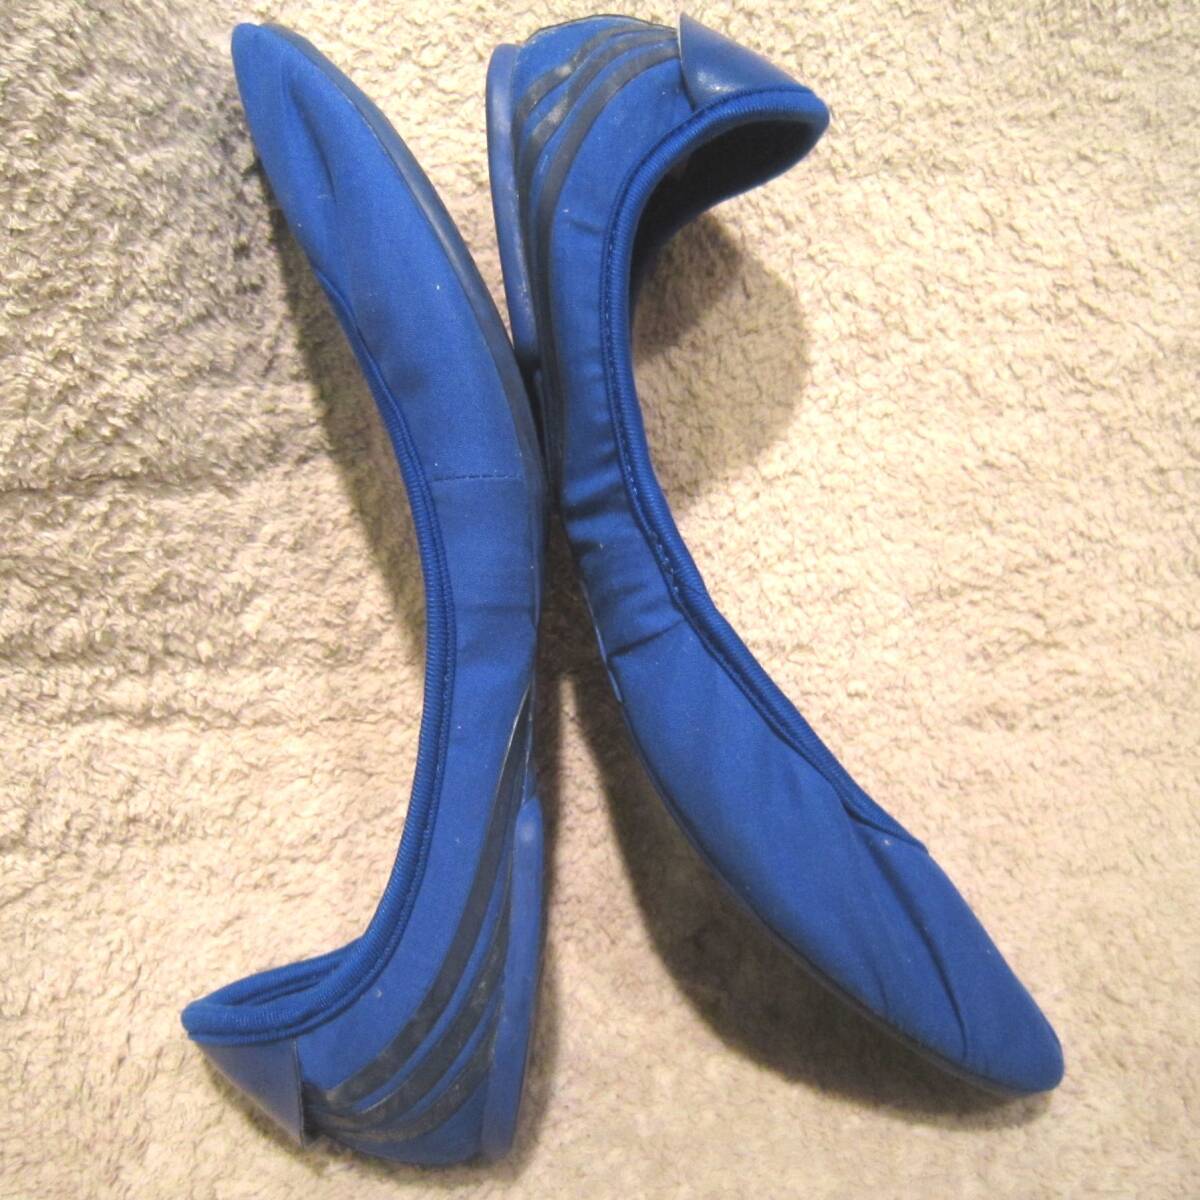  Adidas Stella McCartney flat shoes (G46337) blue wm24.US7 adidas Stella McCartney ballet shoes 11 year made wj2404b